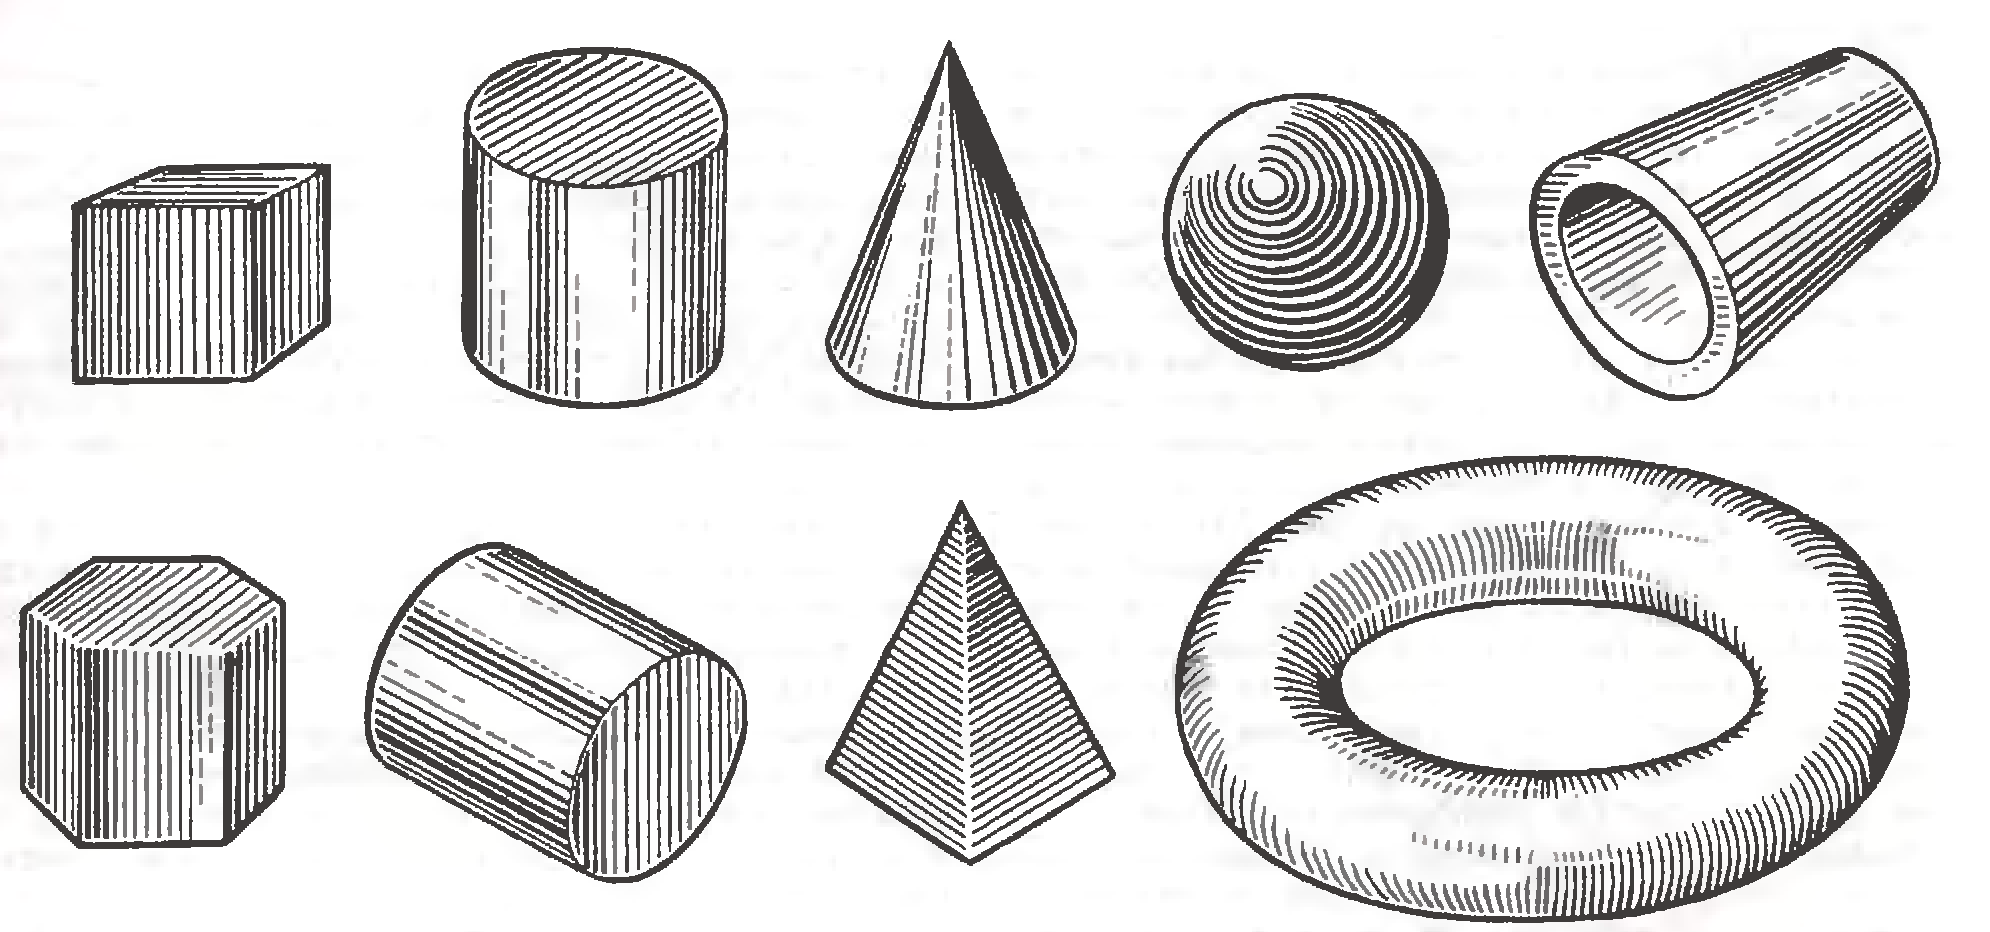 Векторная графика простейшие геометрические объекты. Штриховка по форме. Технический рисунок геометрических тел. Штриховка геометрических фигур. Технический рисунок штриховка.